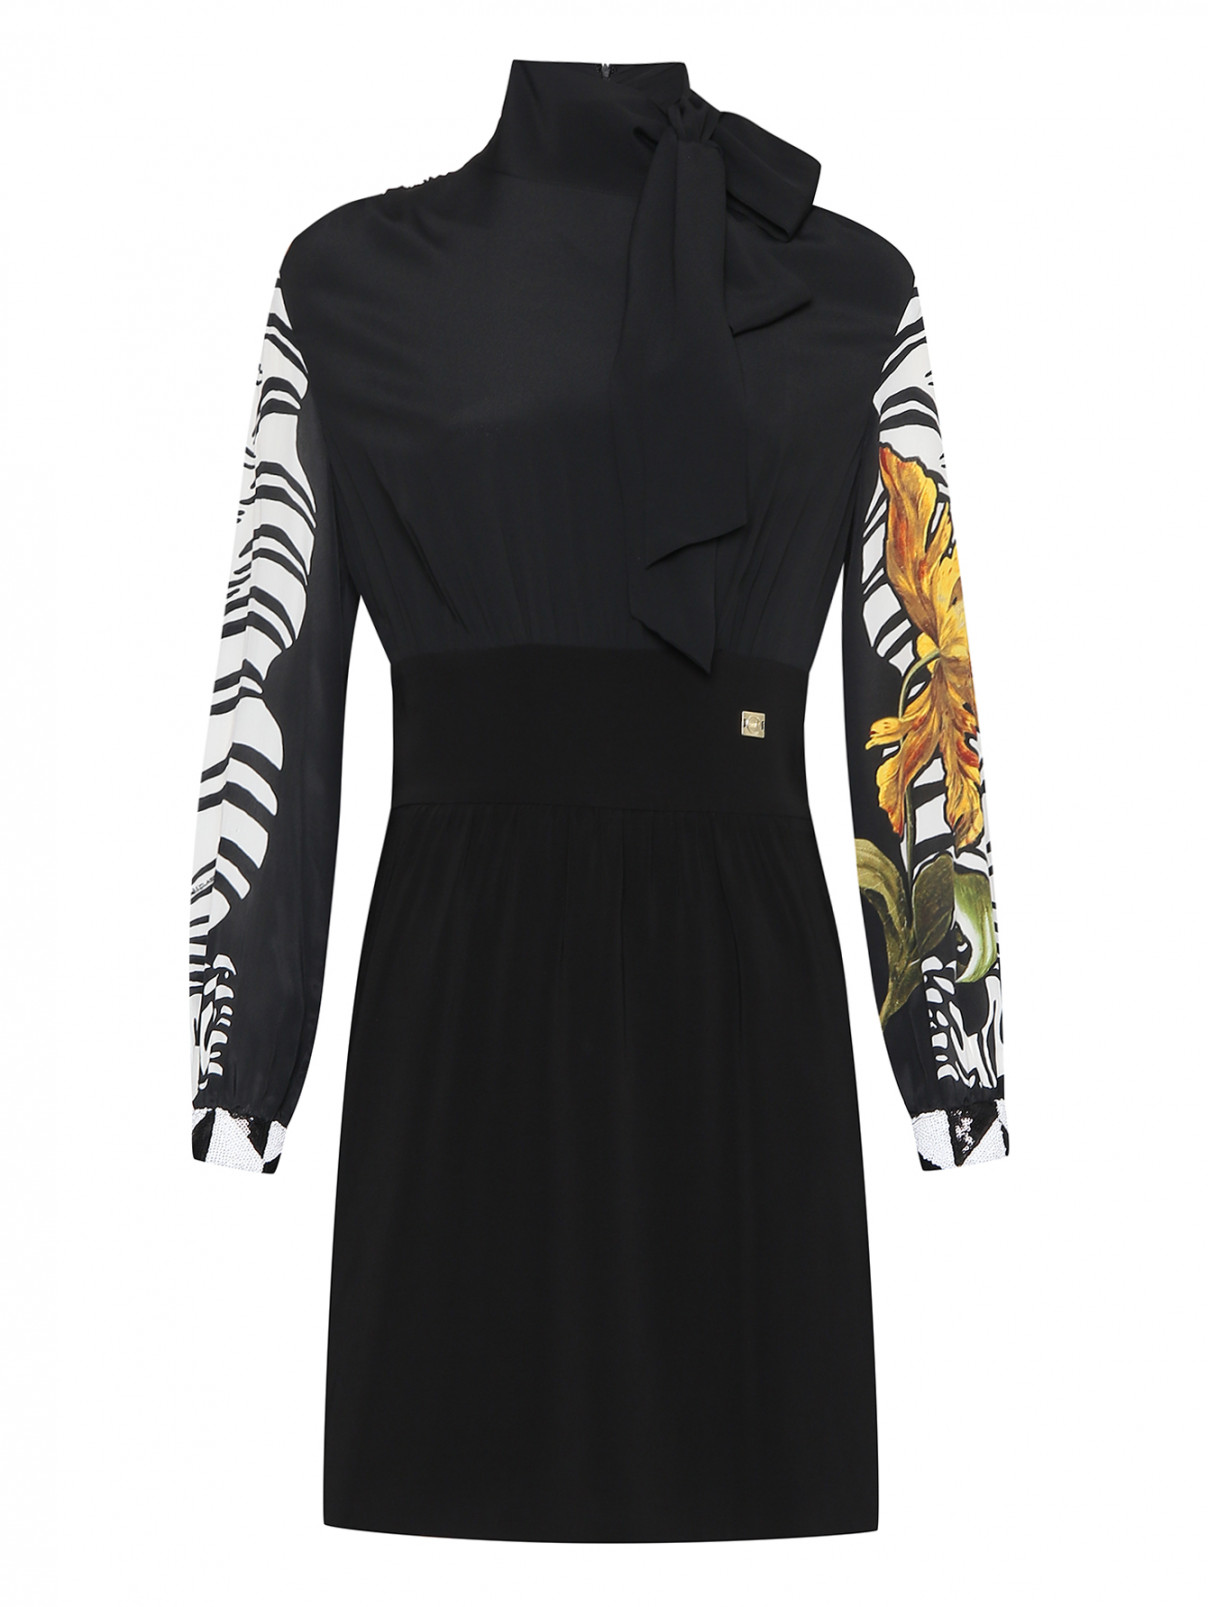 Платье комбинированное с узором и пайетками Cavalli class  –  Общий вид  – Цвет:  Черный